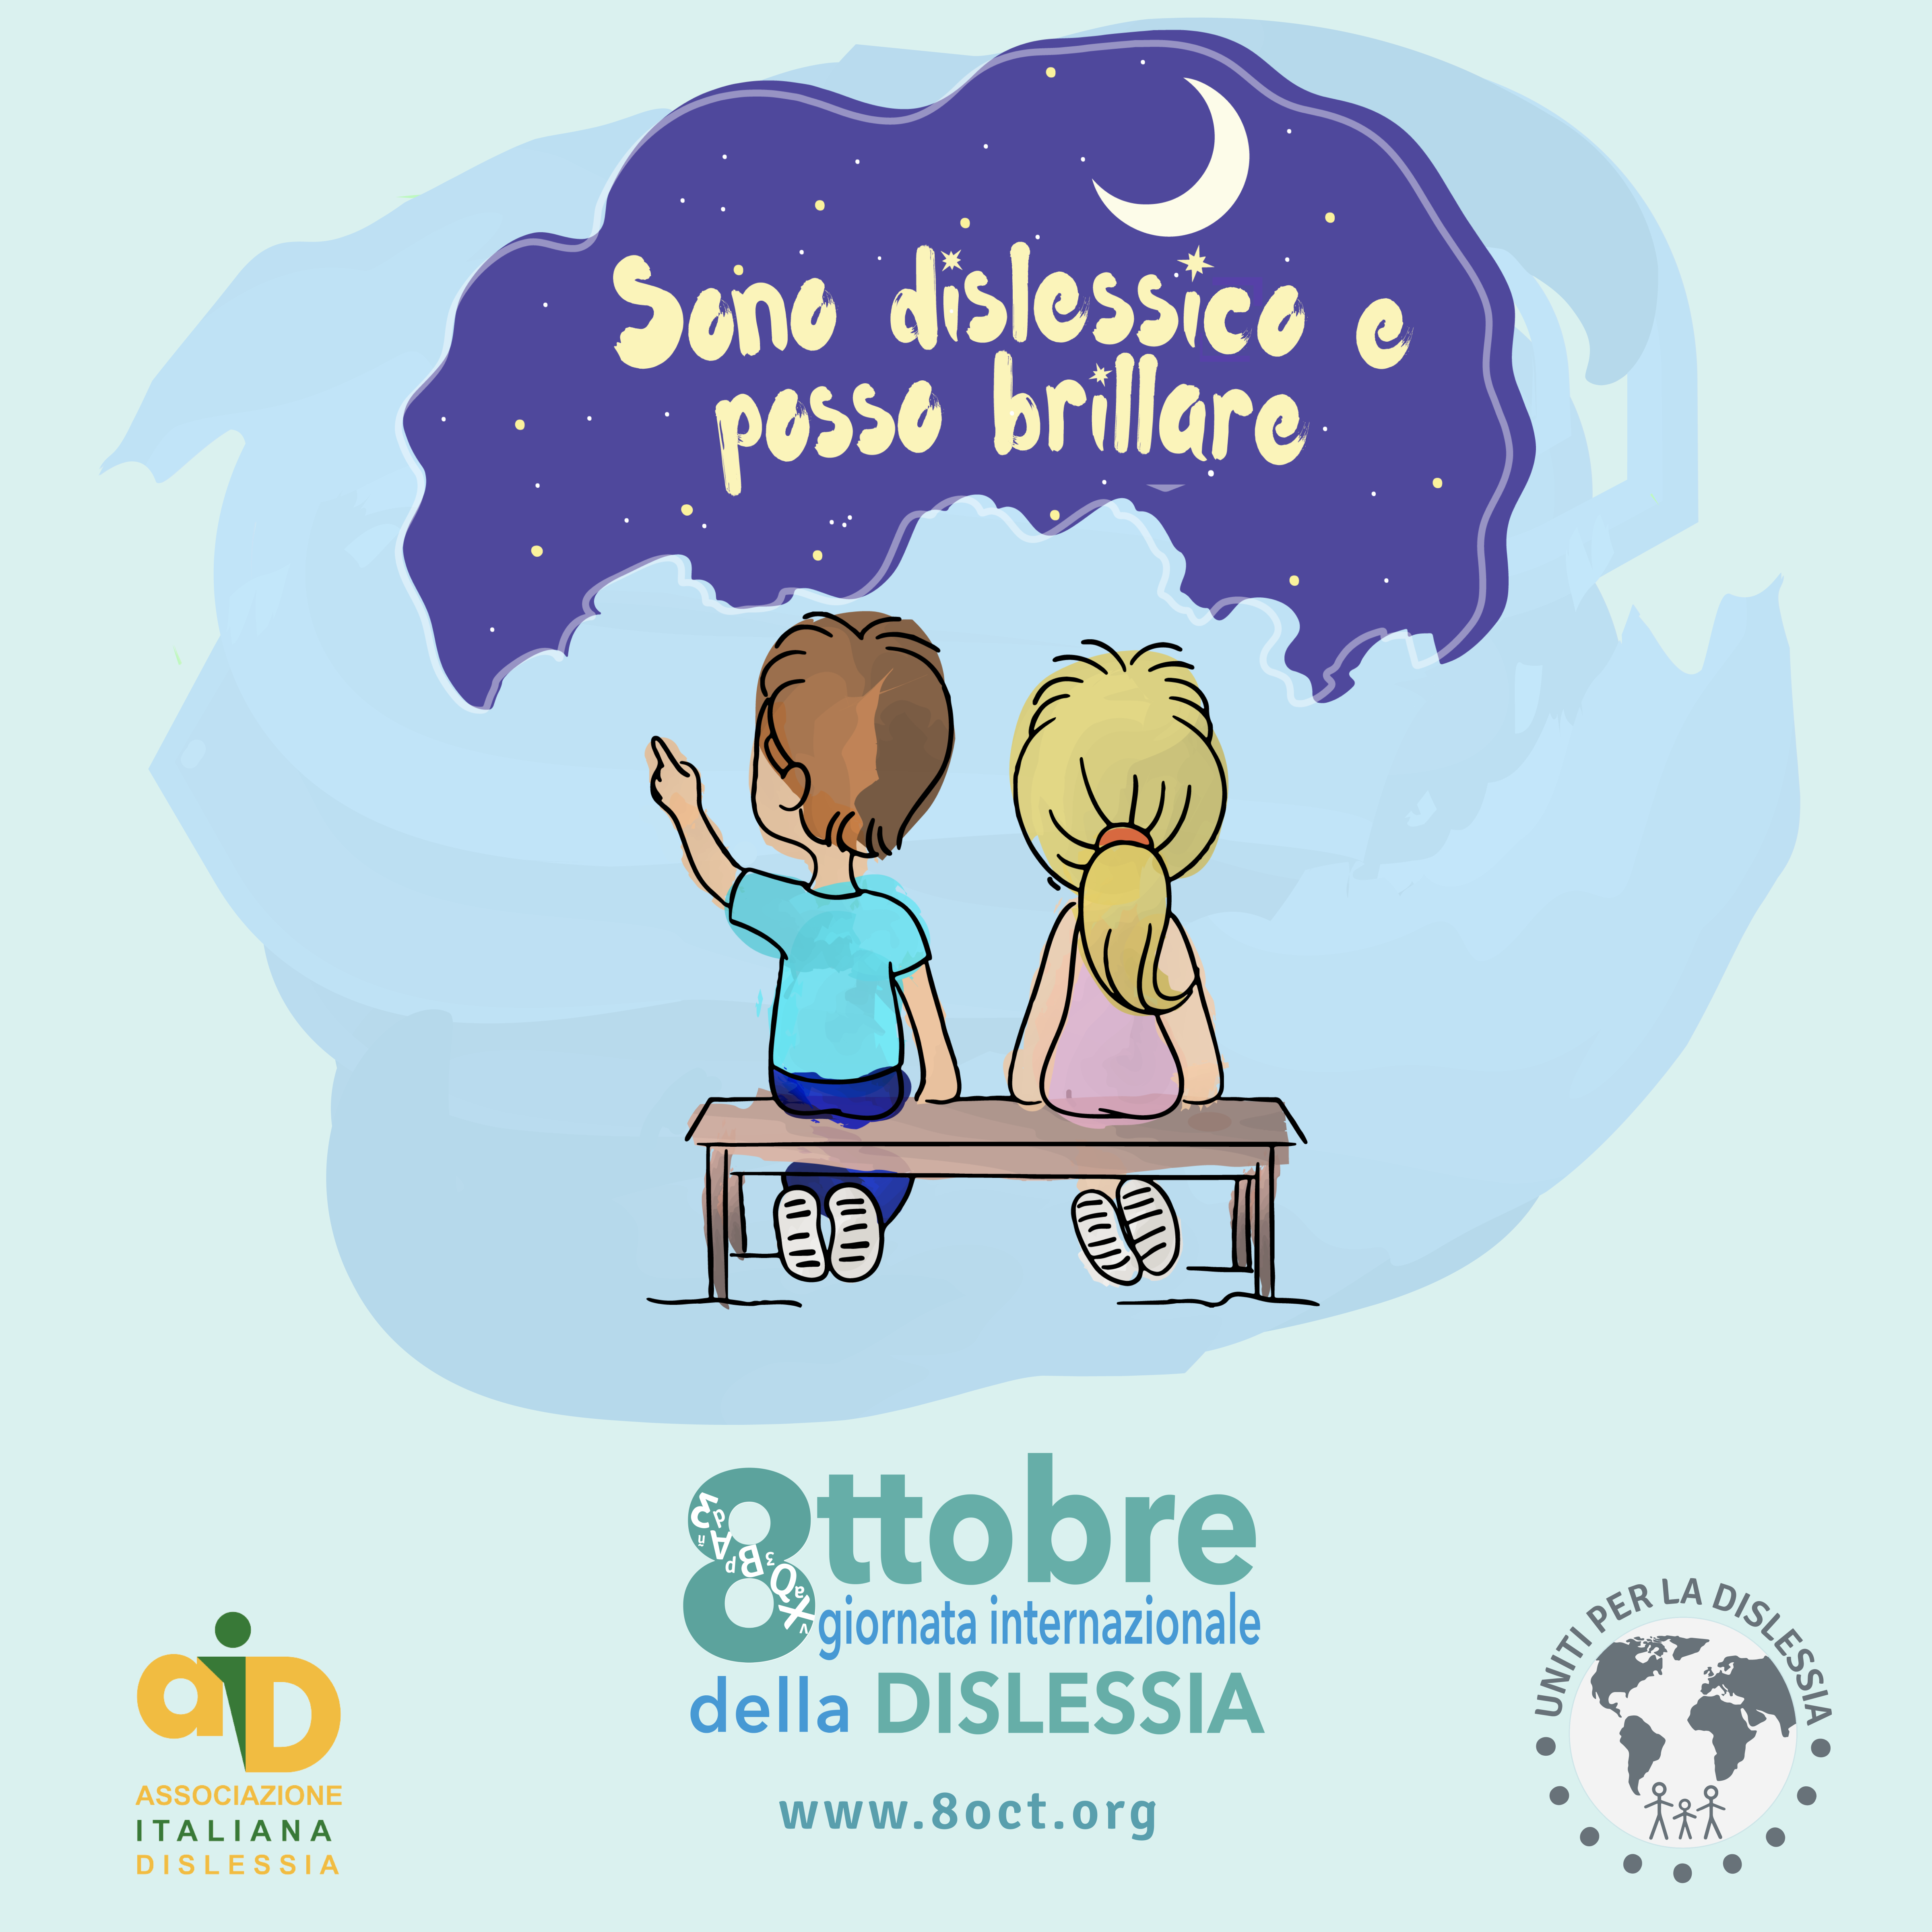 Domenica 8 ottobre AID aderisce alla campagna Uniti per la dislessia: decine di piazze, edifici e monumenti in tutta Italia verranno illuminati di turchese per sensibilizzazione l'opinione pubblica sui disturbi specifici dell'apprendimento